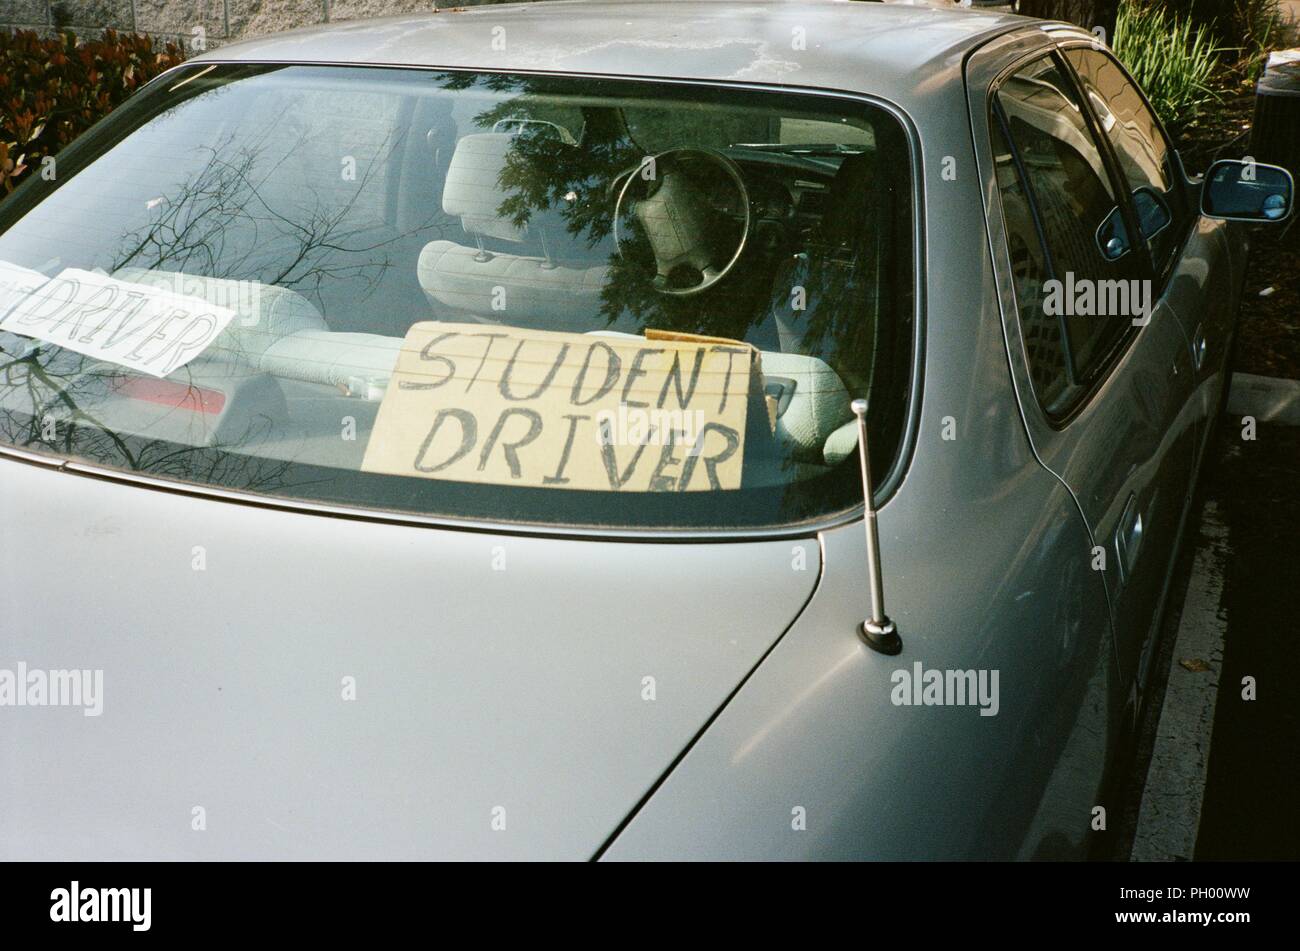 Vue arrière de voiture avec chauffeur étudiant lecture signe manuscrit, avertissement d'autres pilotes que la personne qui conduit le véhicule est d'apprendre à conduire, Dublin, Californie, mai 2018. () Banque D'Images